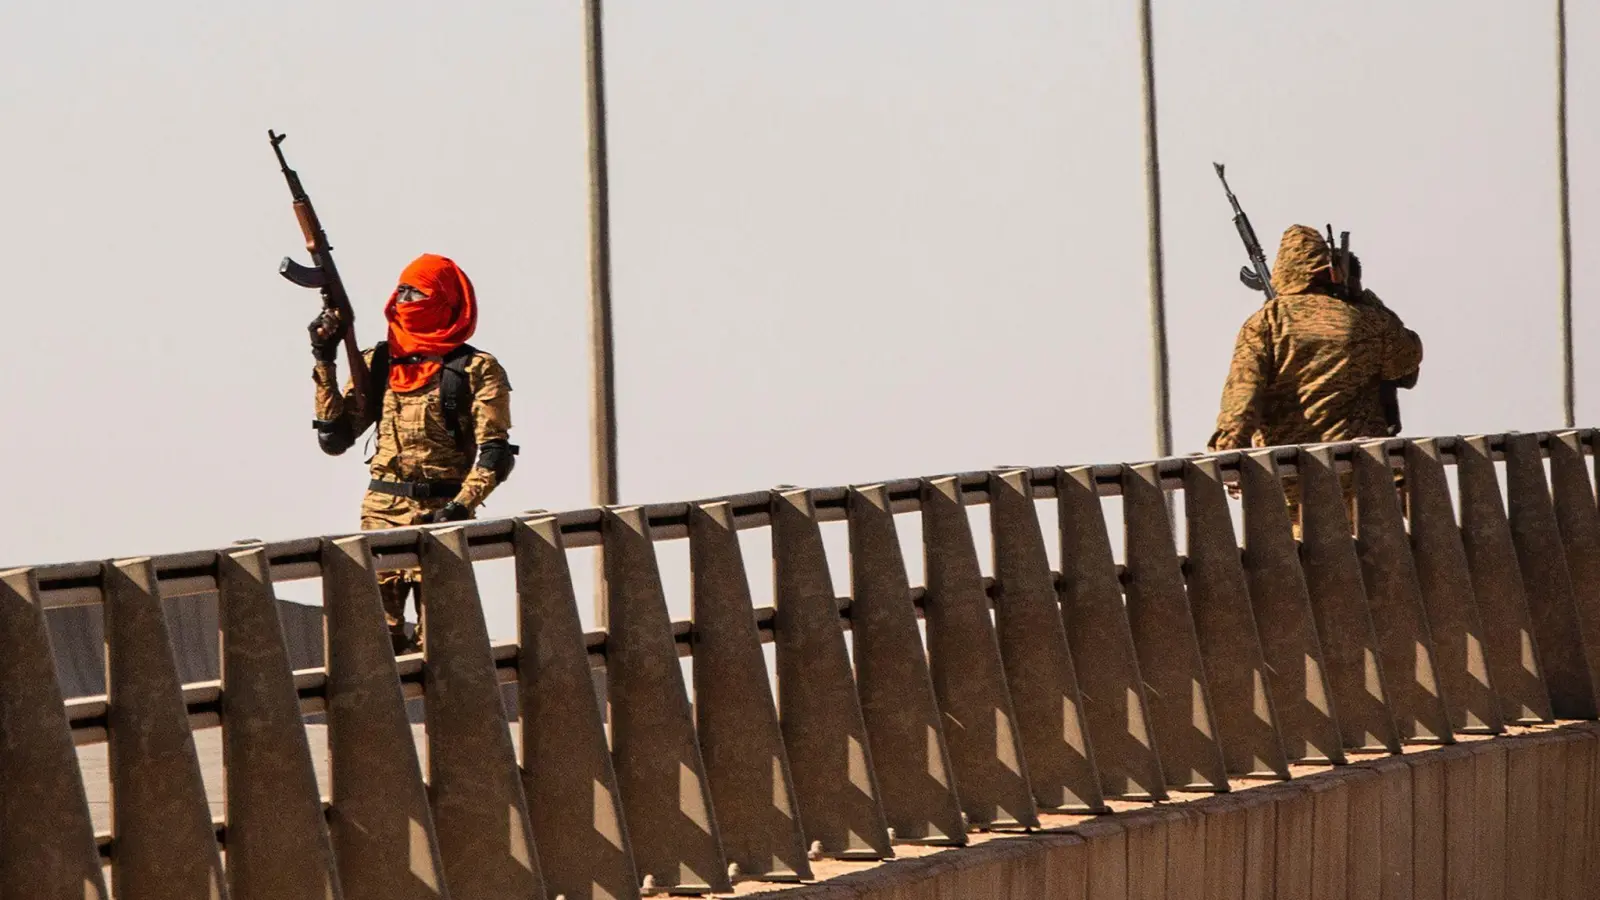 Wieder sind Zivilisten umgekommen: In nur wenigen Tagen häufen sich die Angriffe in Burkina Faso. (Foto: Sophie Garcia/AP/dpa)